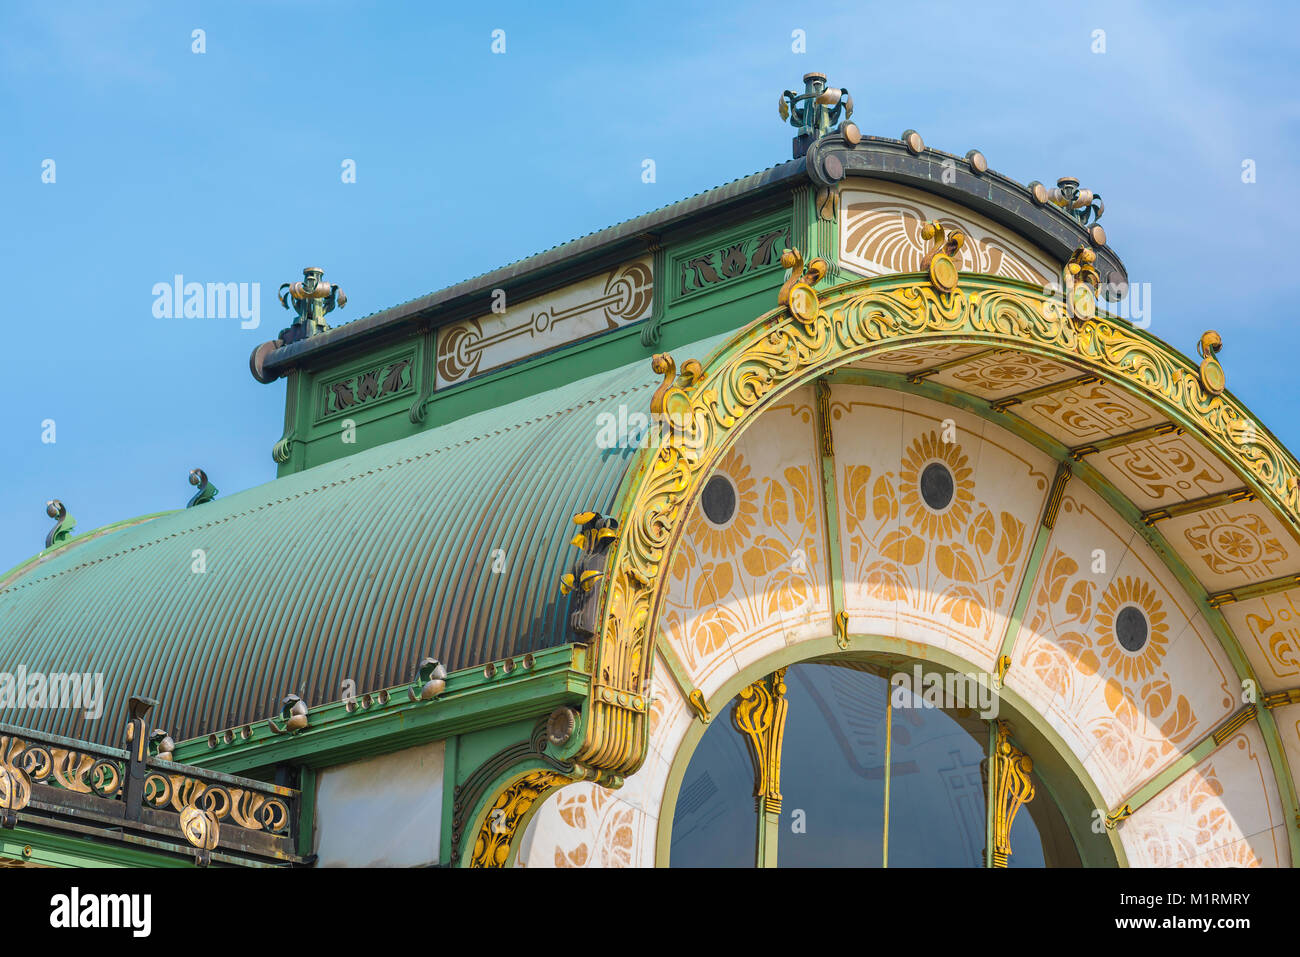 Secession Wien, Detail der Karlsplatz u-bahn Station - eines der besten Beispiele in der Architektur des Jugendstils Jugendstils, Österreich. Stockfoto